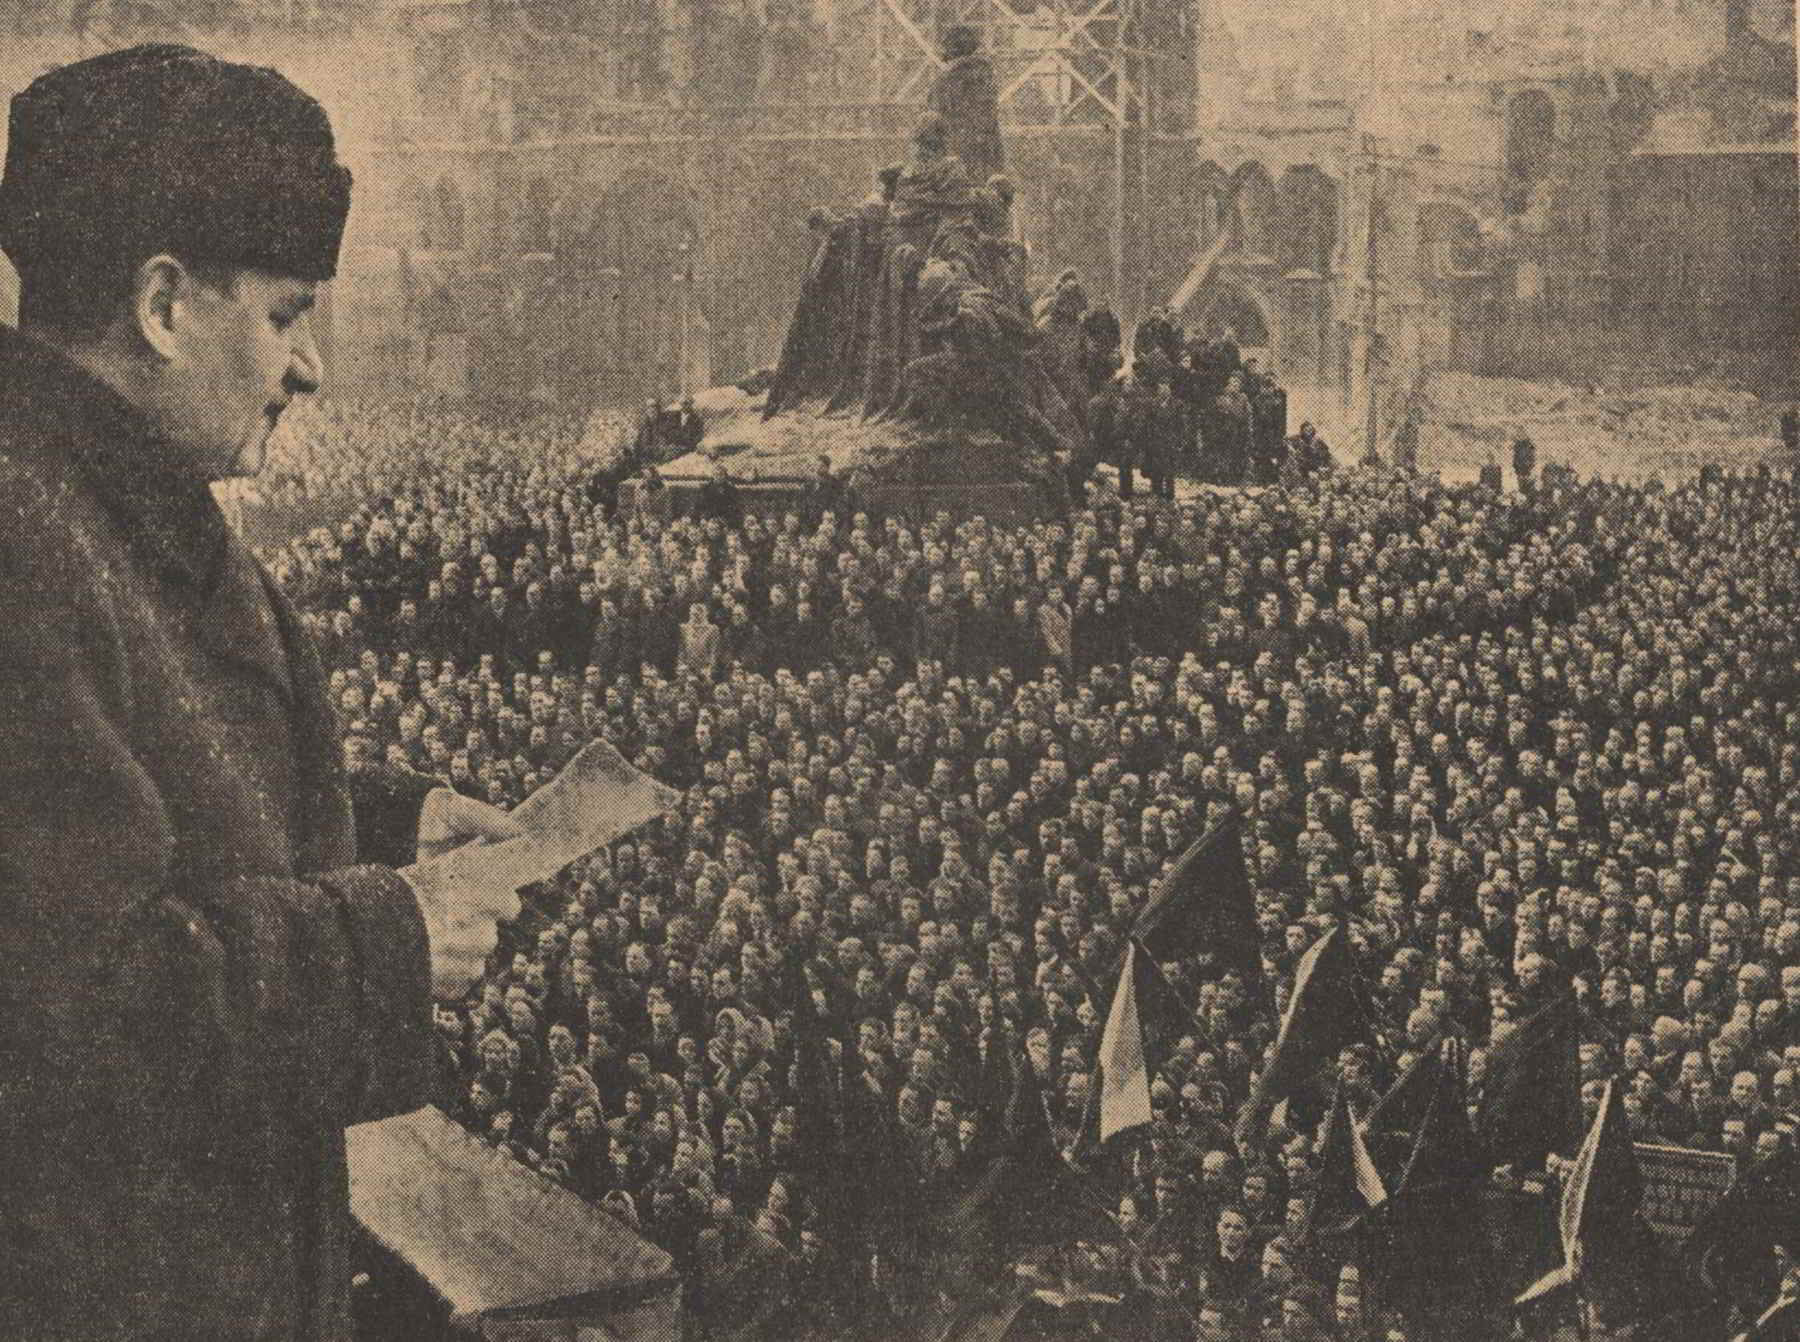 Discorso di Klement Gottwald durante la manifestazione comunista del 21 febbraio 1948